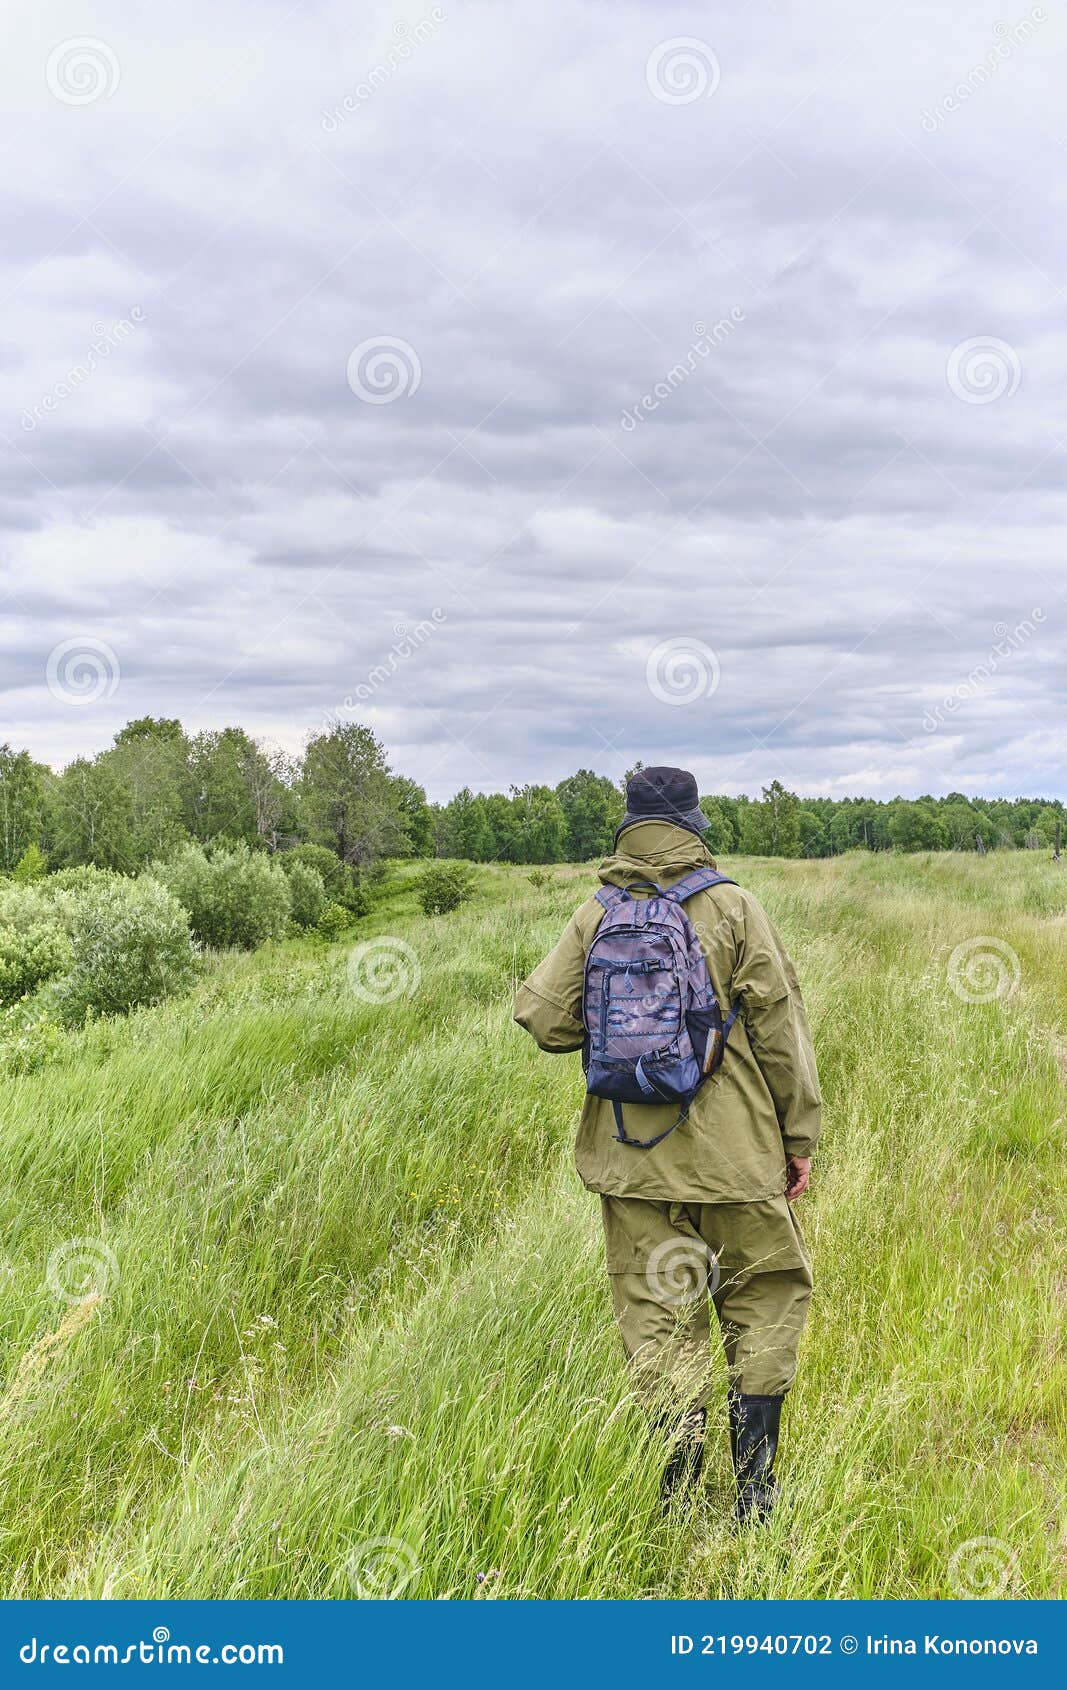 ενεργός άντρας με στολή κουνούπι με σακίδιο για πεζοπορία σε λιβάδι. Στοκ  Εικόνες - εικόνα από lifestyle, alon: 219940702